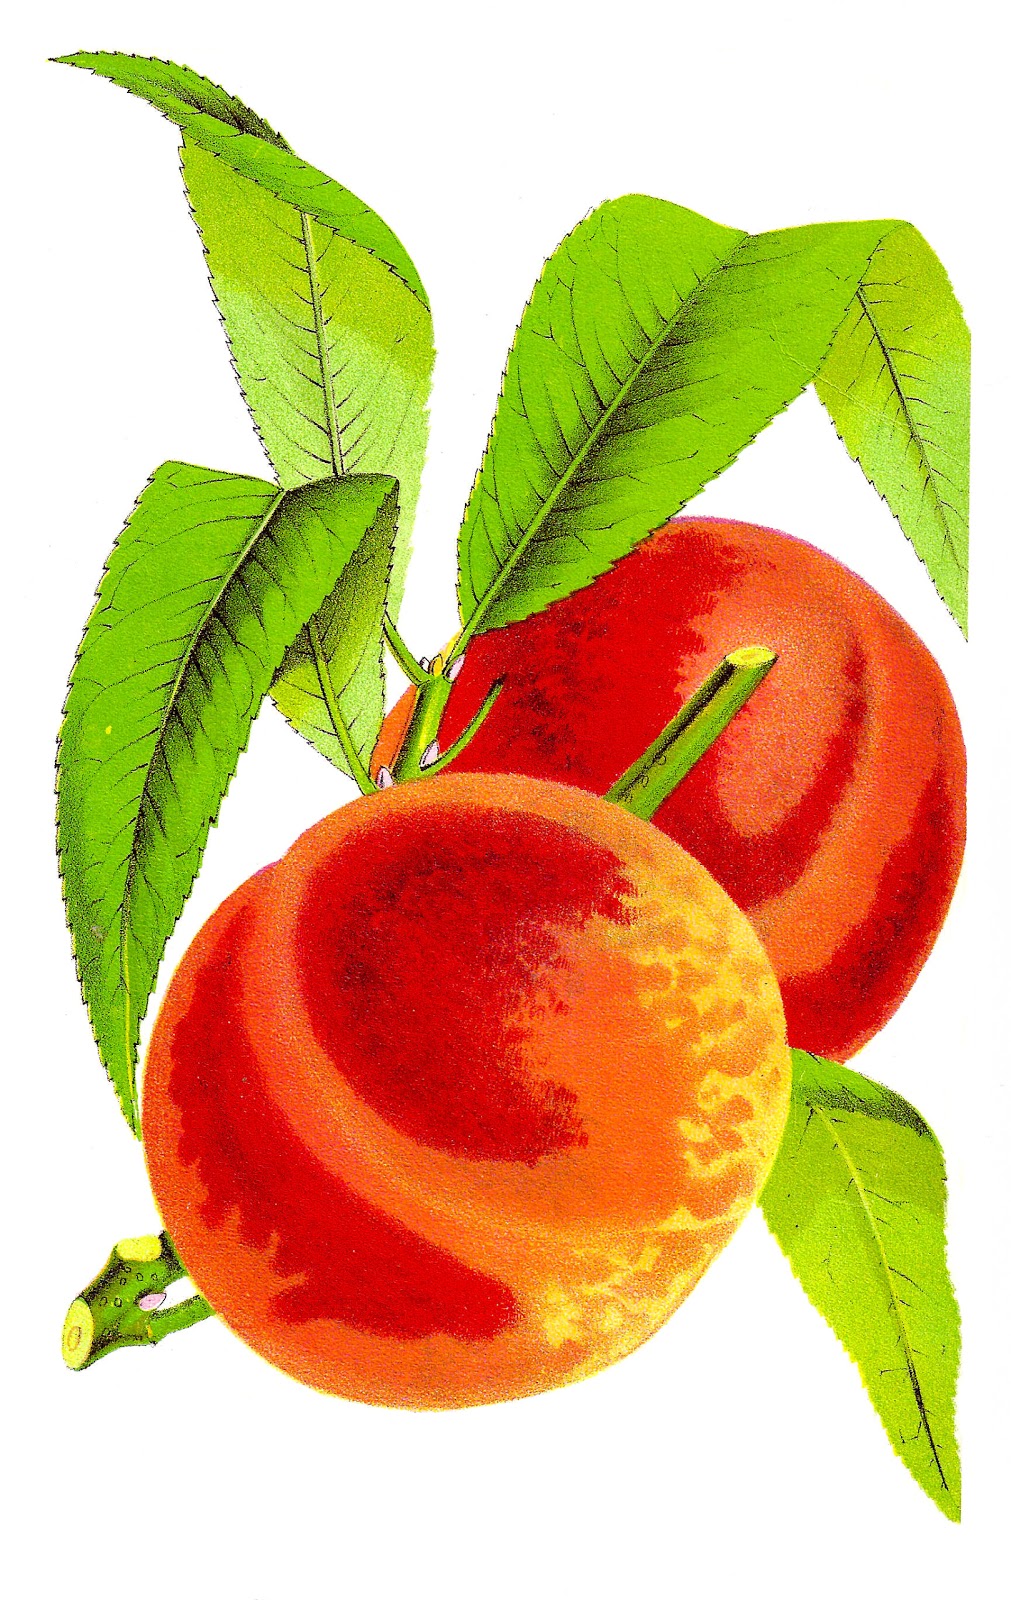 Antique Images: Fruit Clip Art: Vintage Peach Graphic Wheatland.